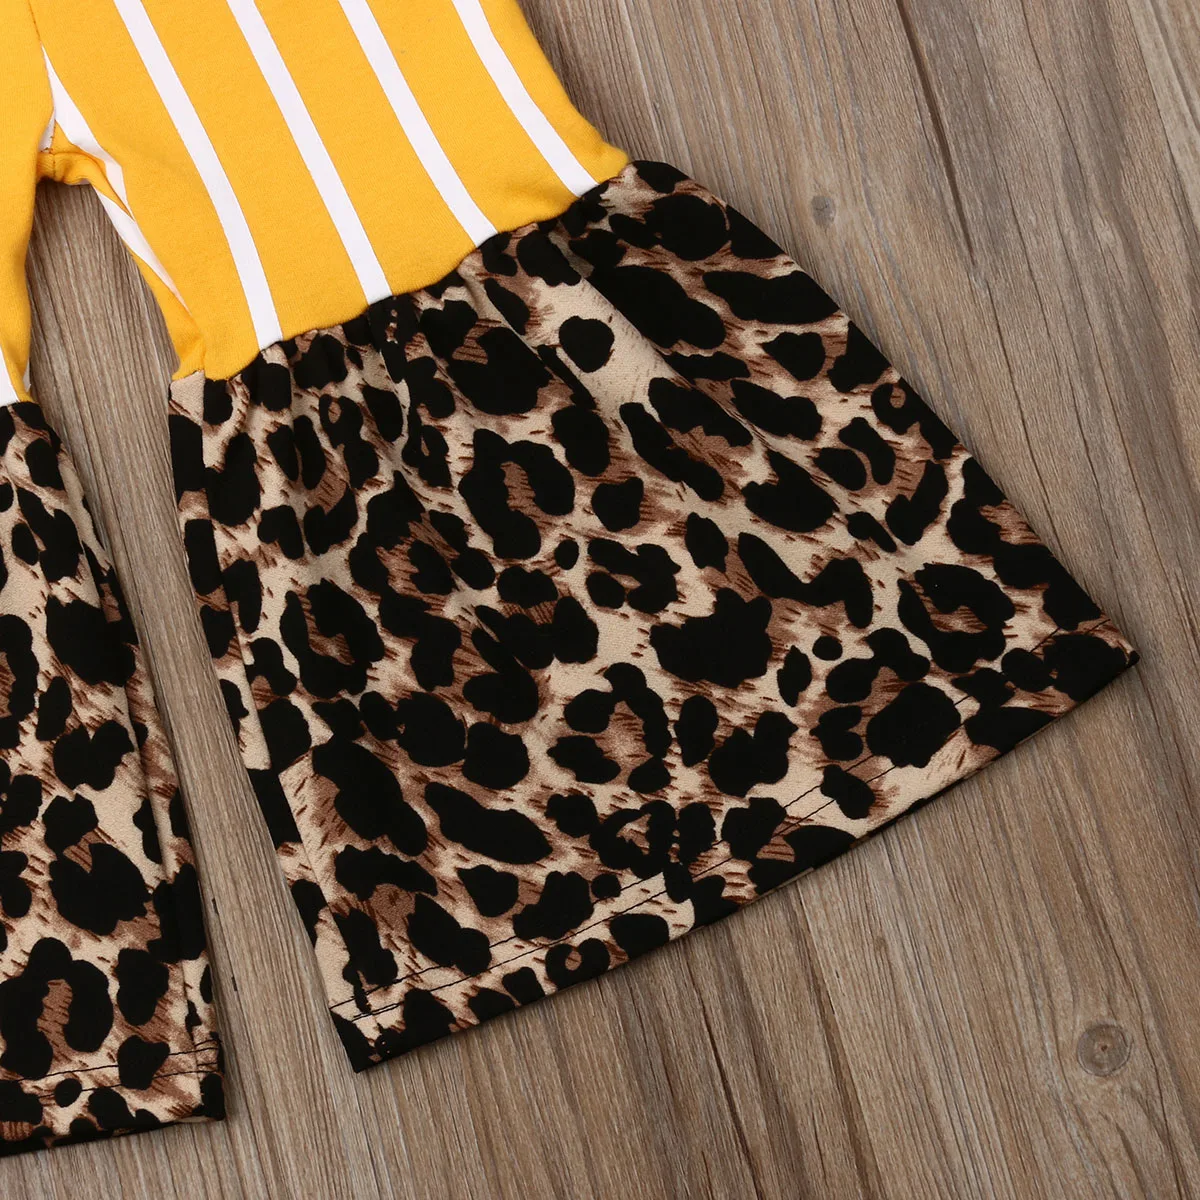 Г. Летняя одежда для малышей Детские штаны для маленьких девочек Полосатые леопардовые Лоскутные штаны, расклешенные длинные штаны, леггинсы, брюки От 1 до 6 лет